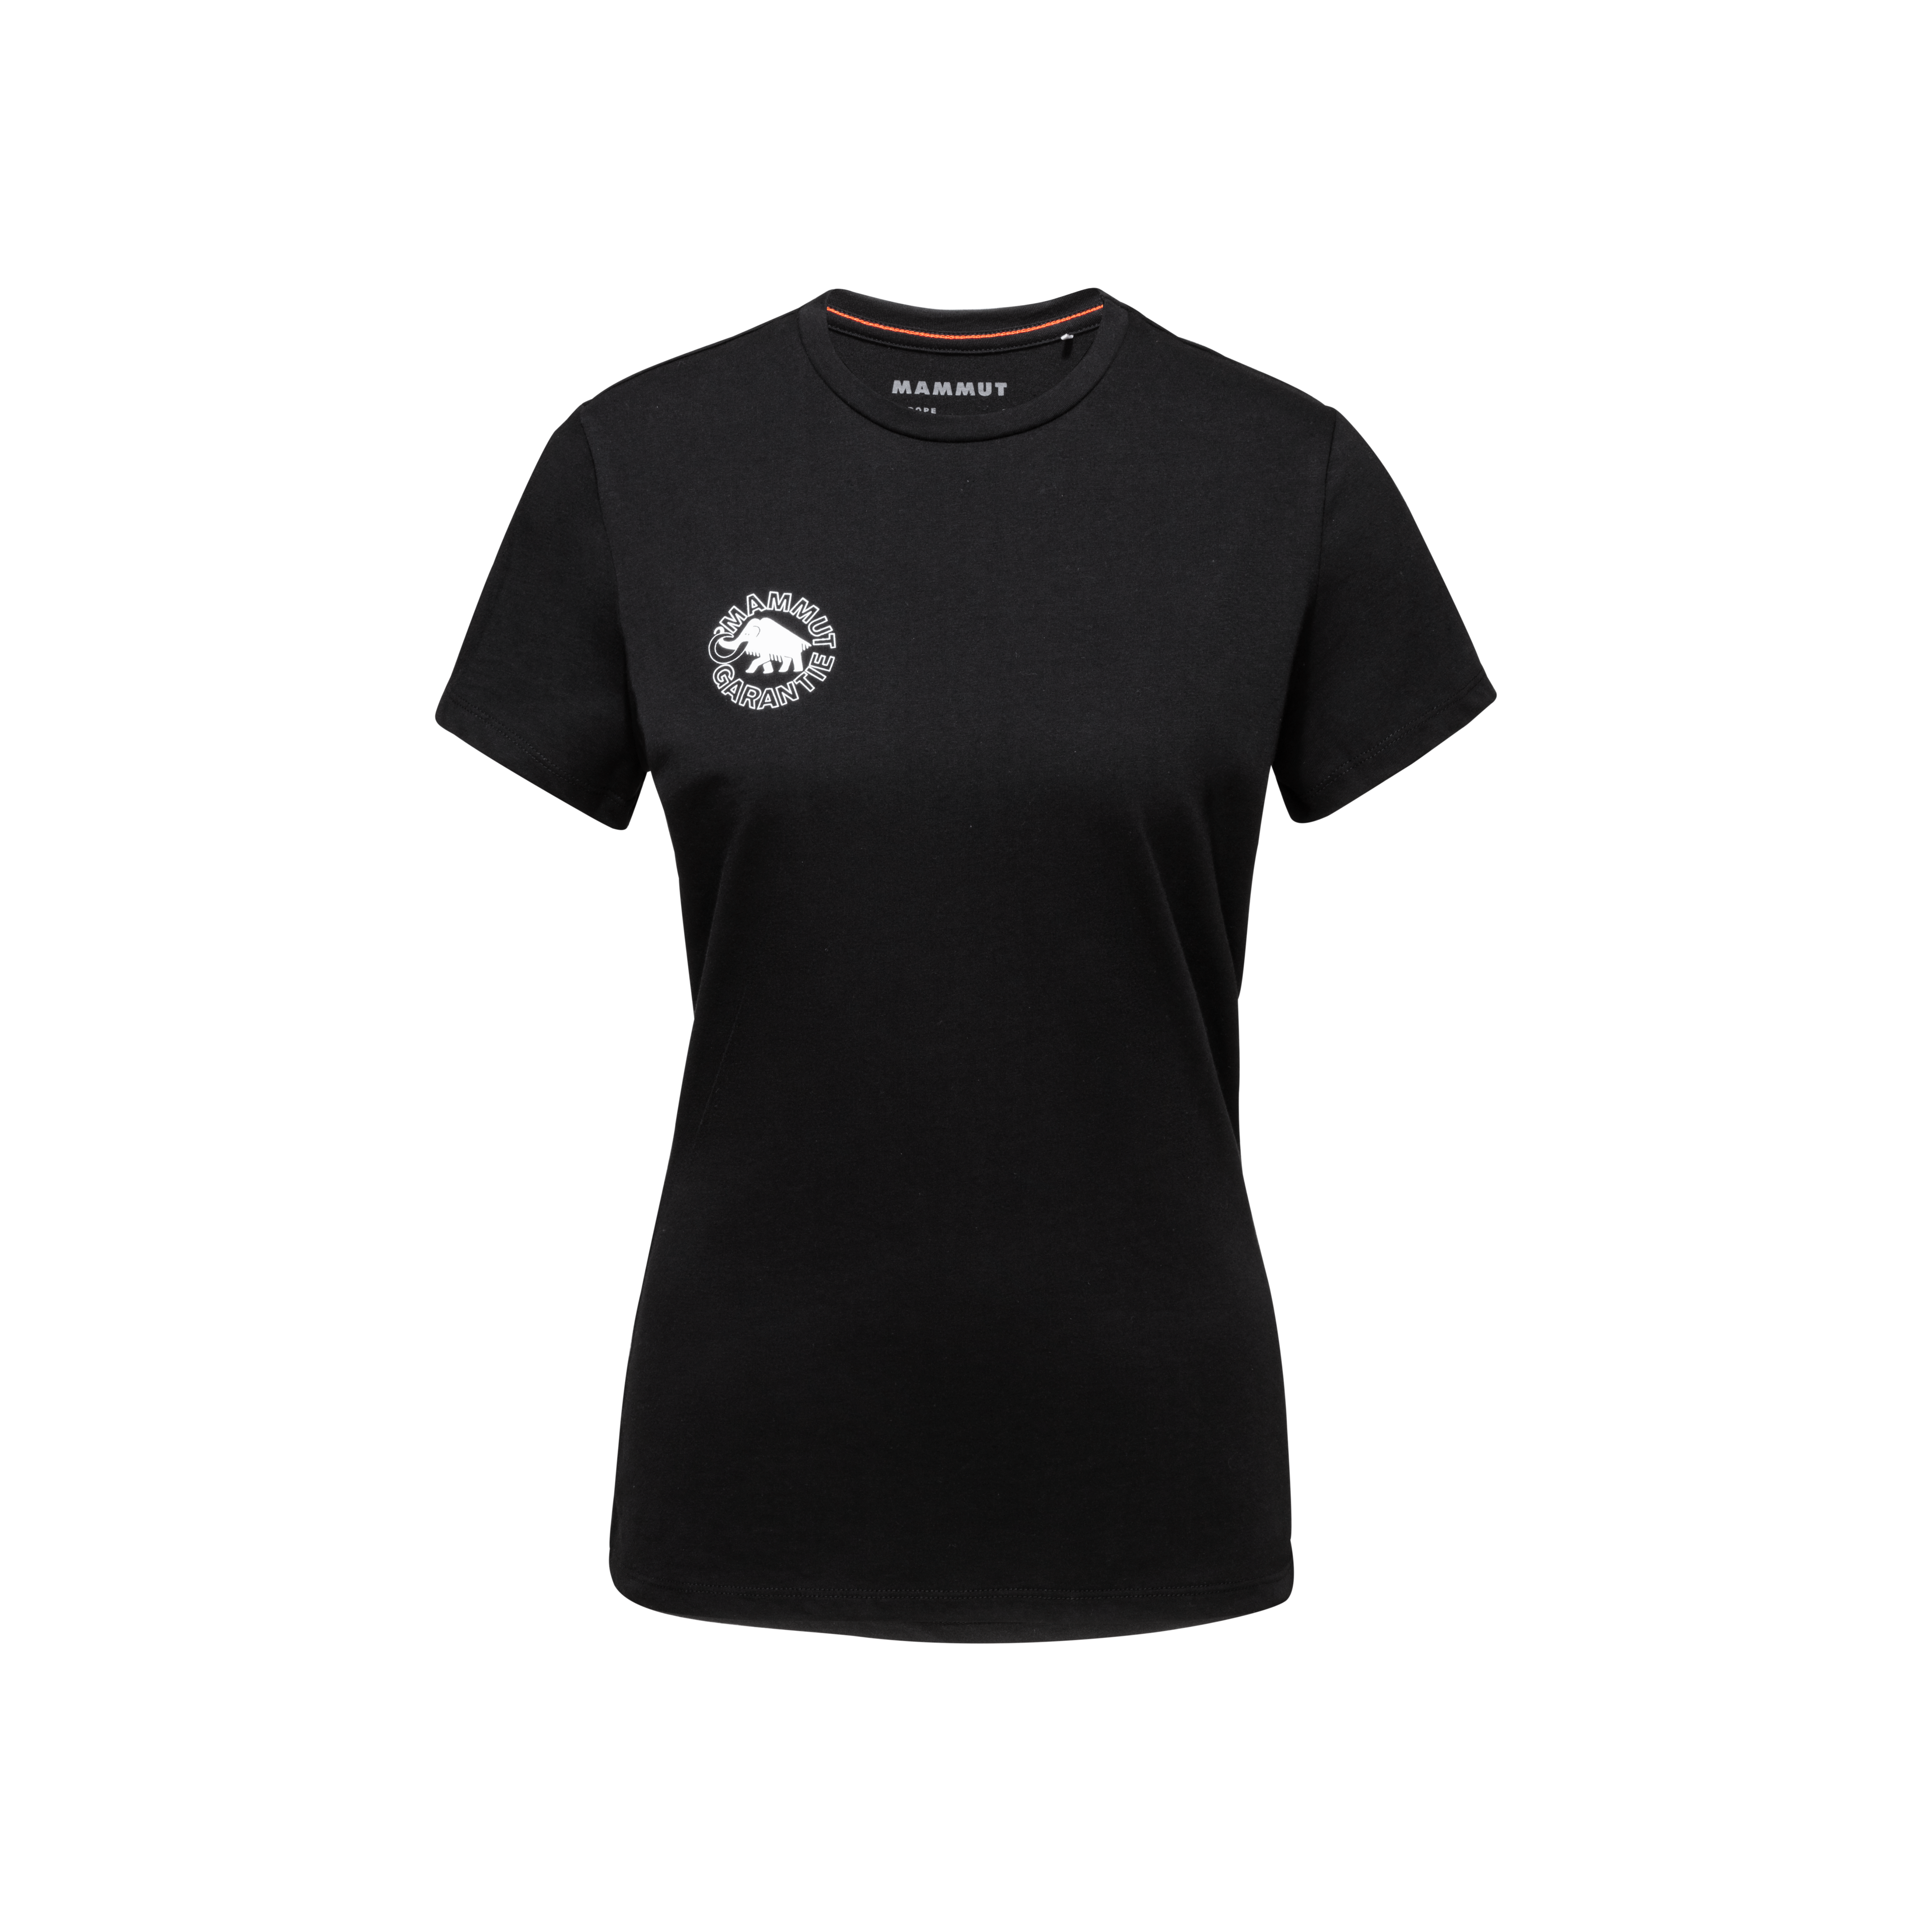 Seile T-Shirt Women Heritage - black, XS thumbnail